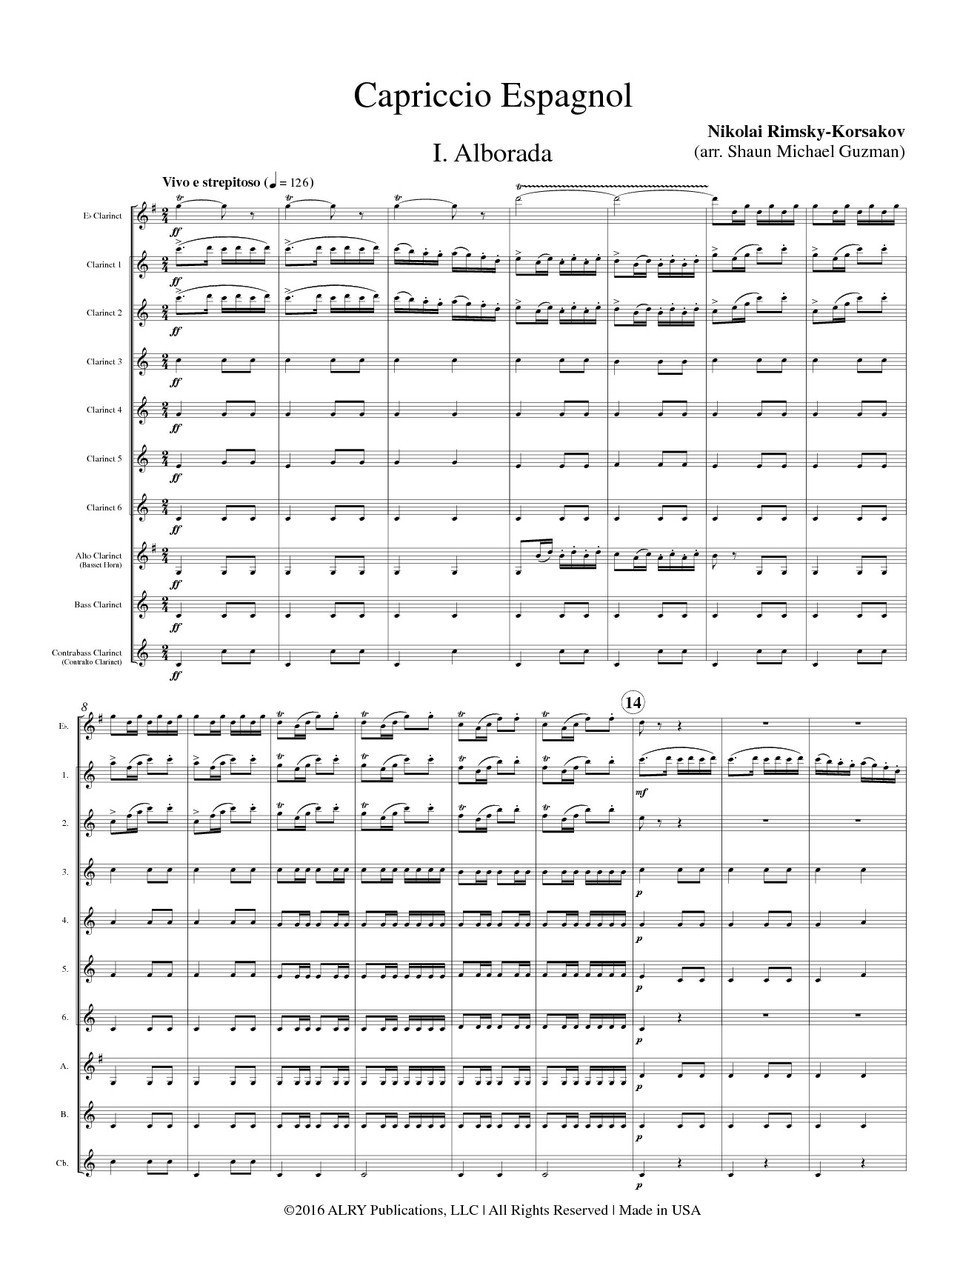 スペイン奇想曲 ニコライ リムスキー コルサコフ クラリネット十重奏 Capriccio Espagnol 吹奏楽の楽譜販売はミュージックエイト